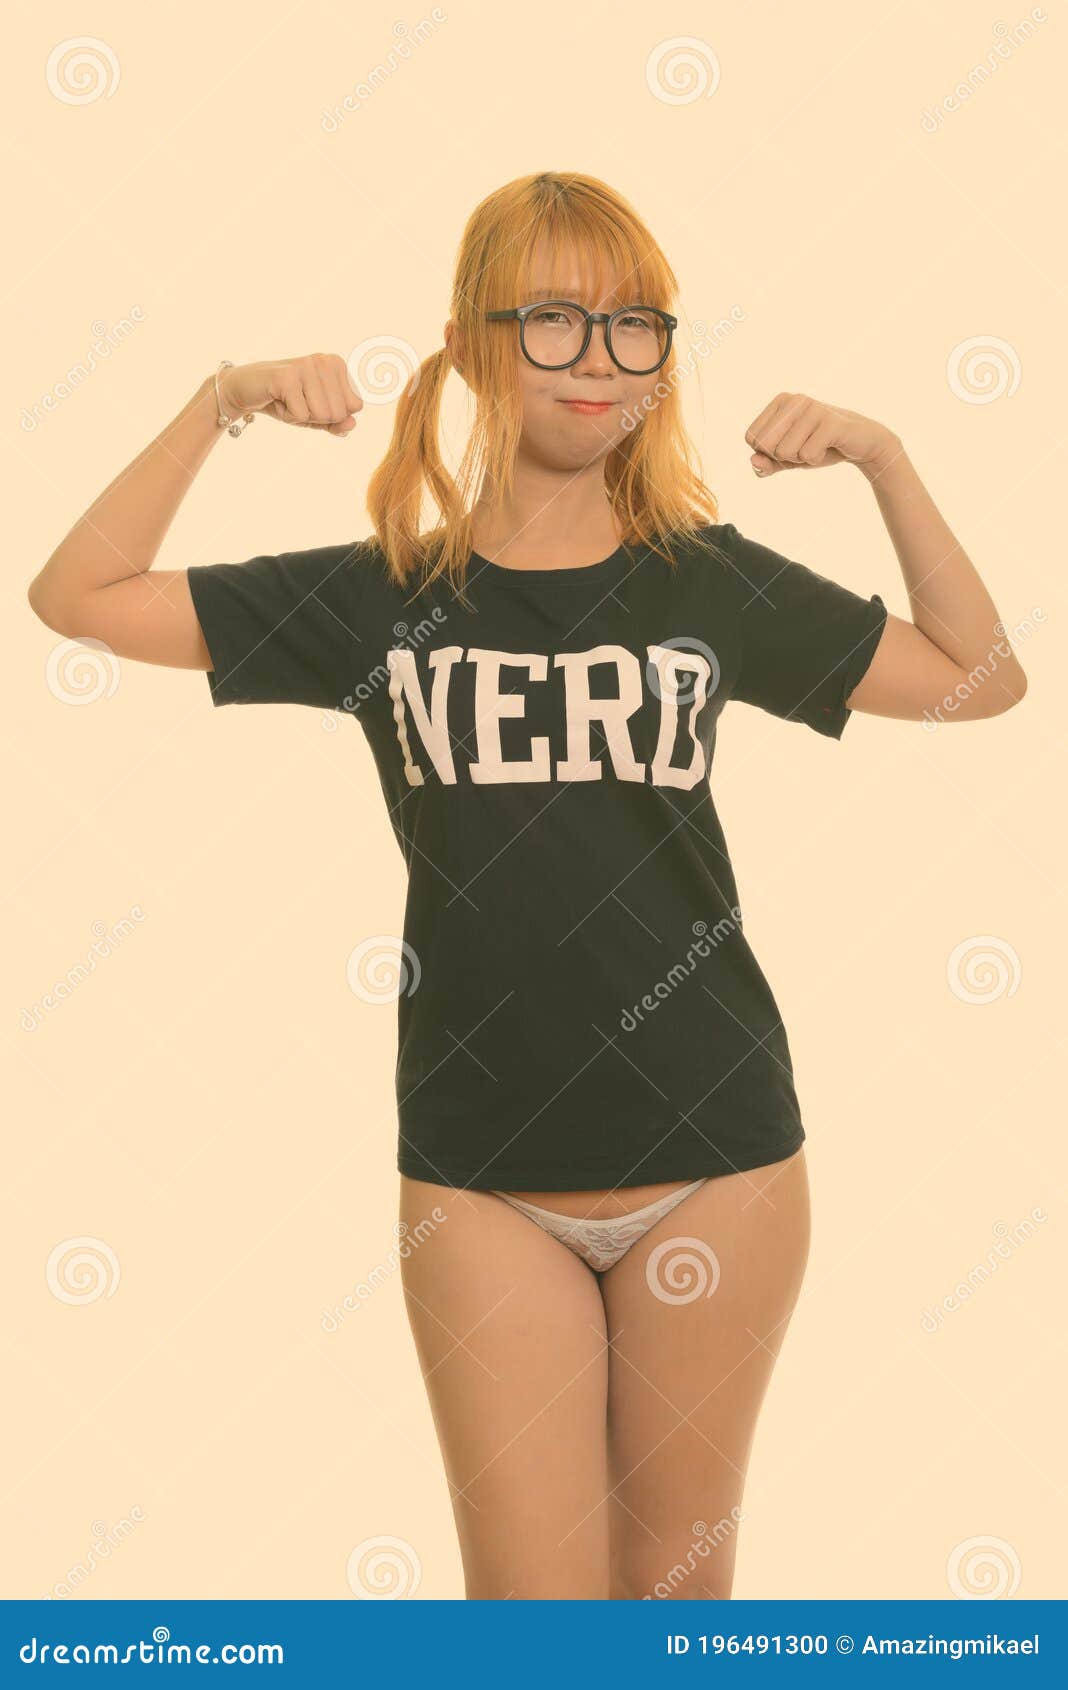 Nerdy Girl Underwear